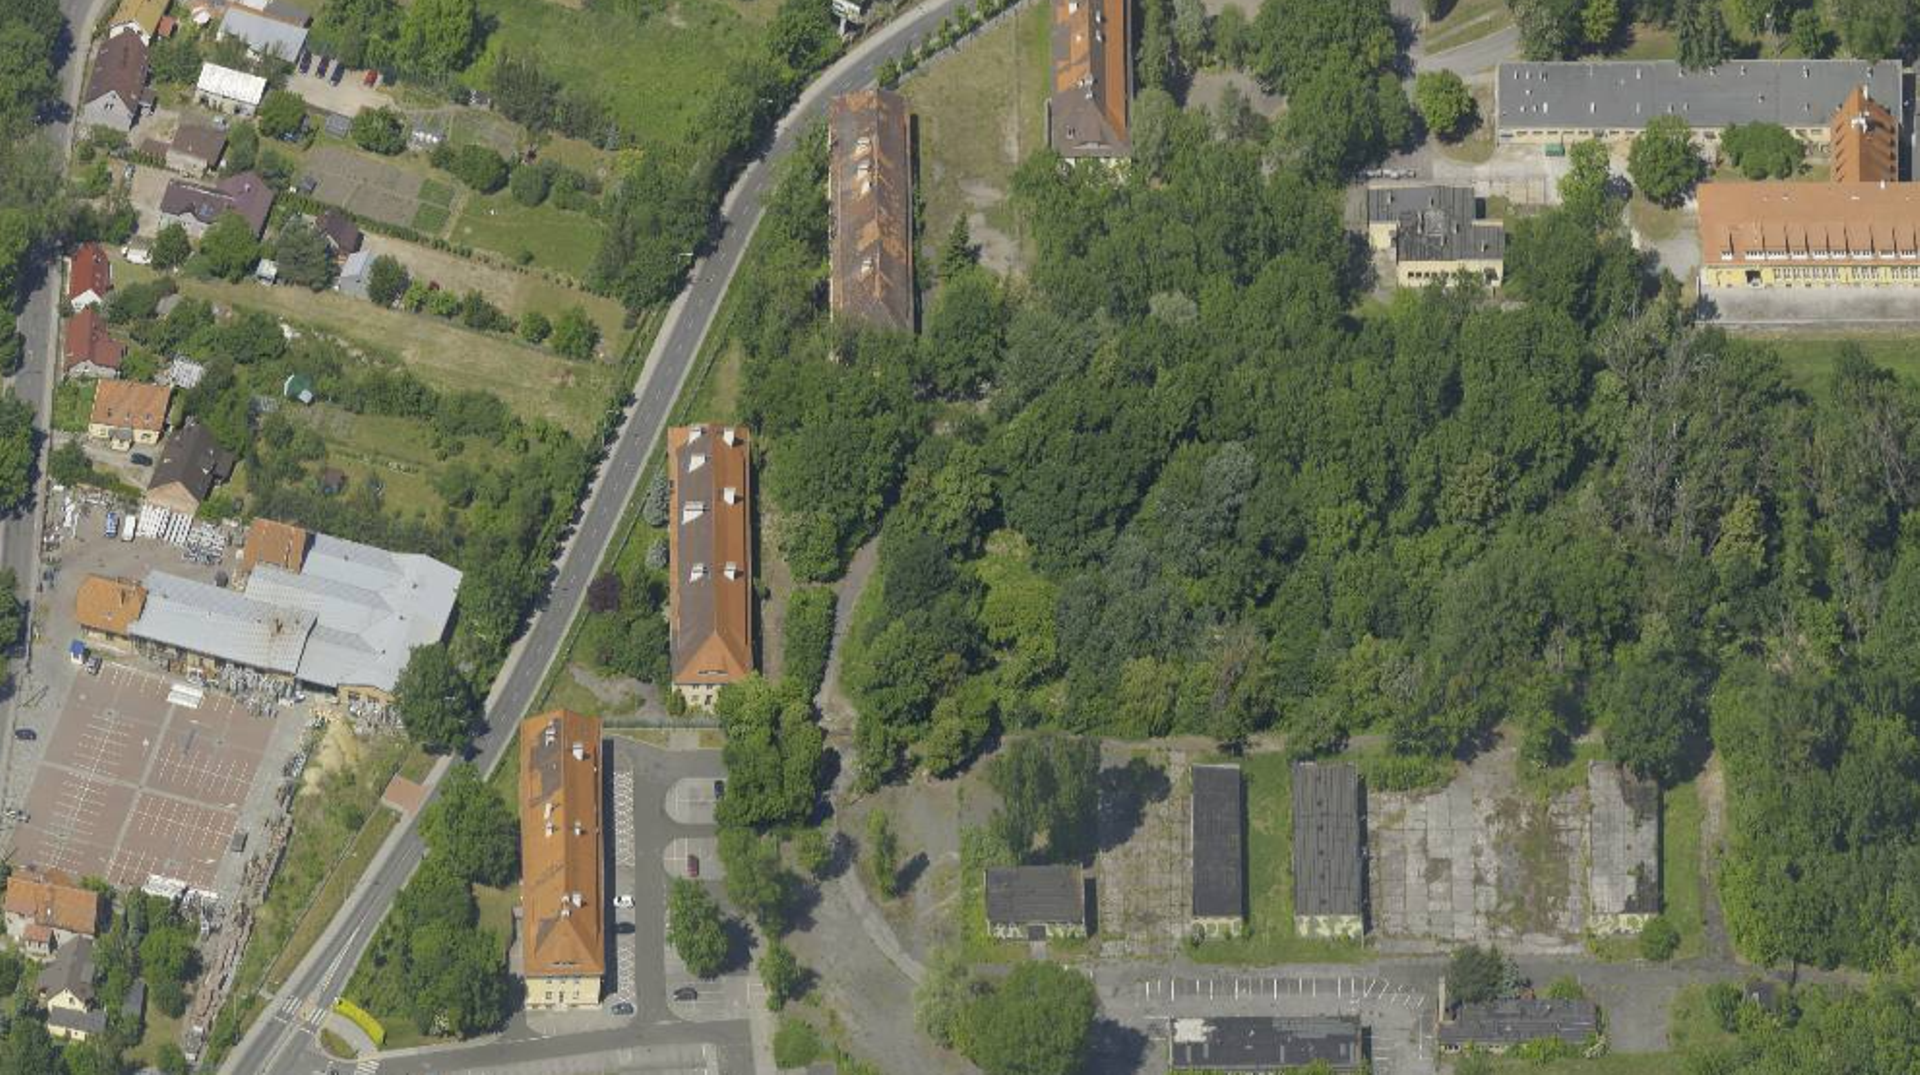 Wrocław: Izba Administracji Skarbowej planuje budowę dużego kompleksu biurowego